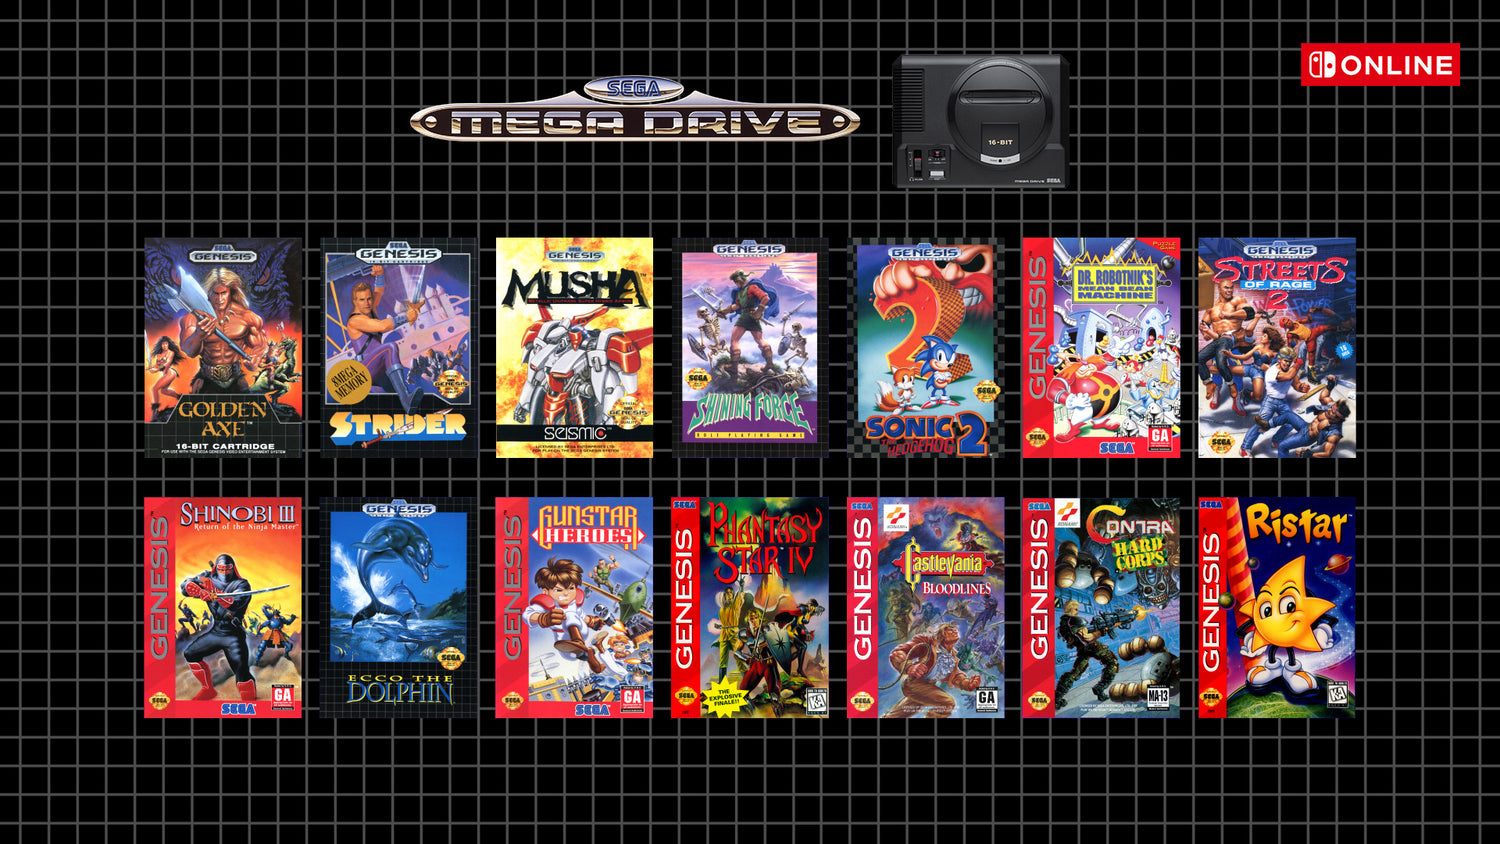 Play classic SEGA Mega Drive games